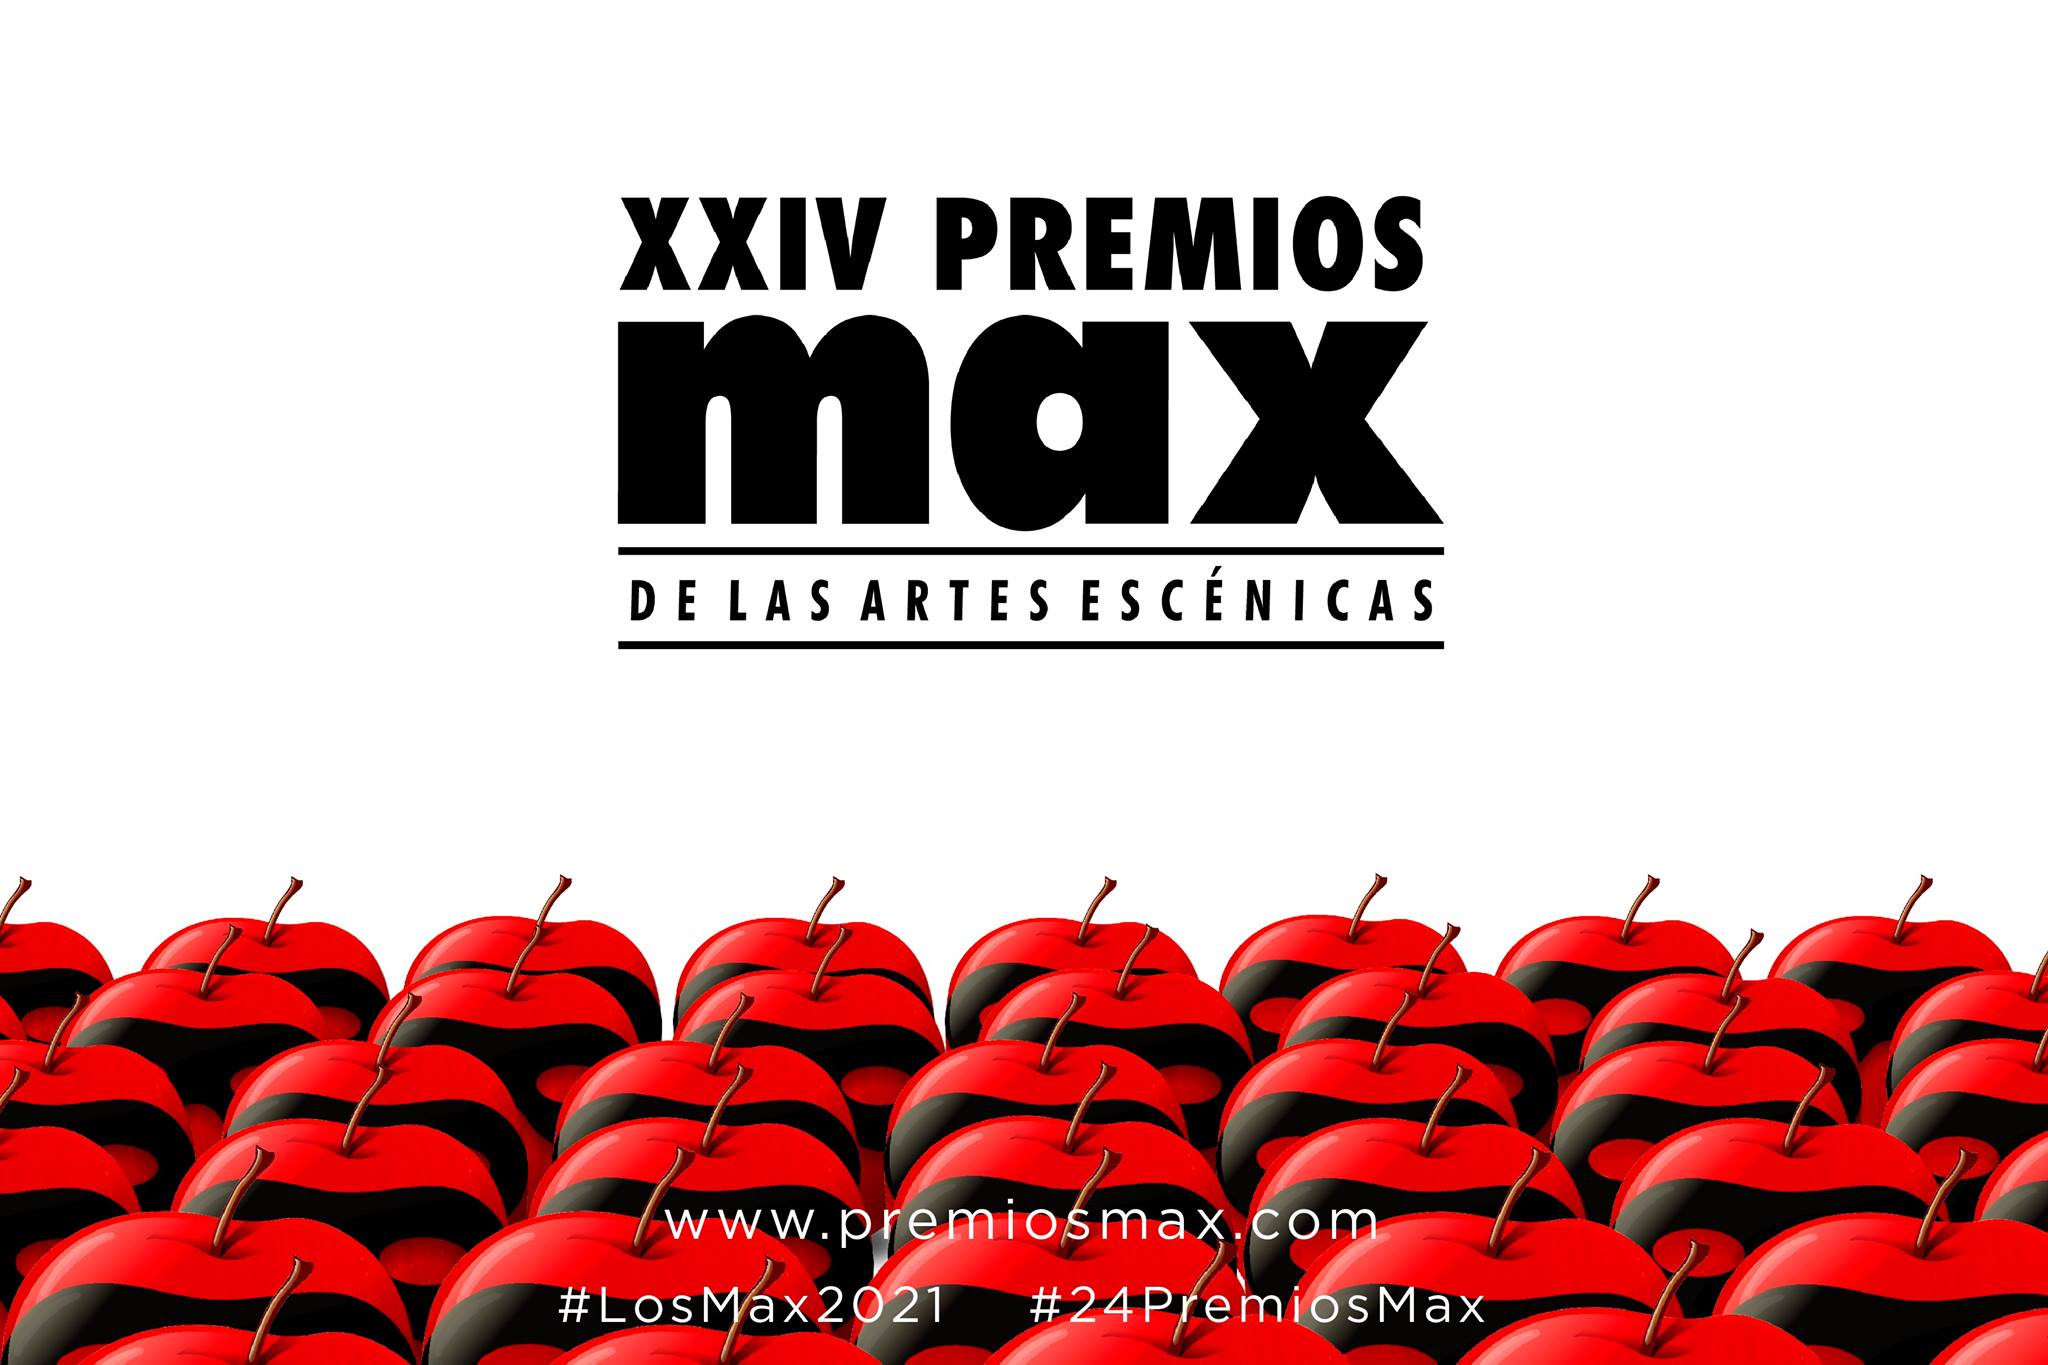 La Fundación SGAE anuncia los candidatos a los XXIV Premios Max y abre las votaciones de su Premio Max del Público